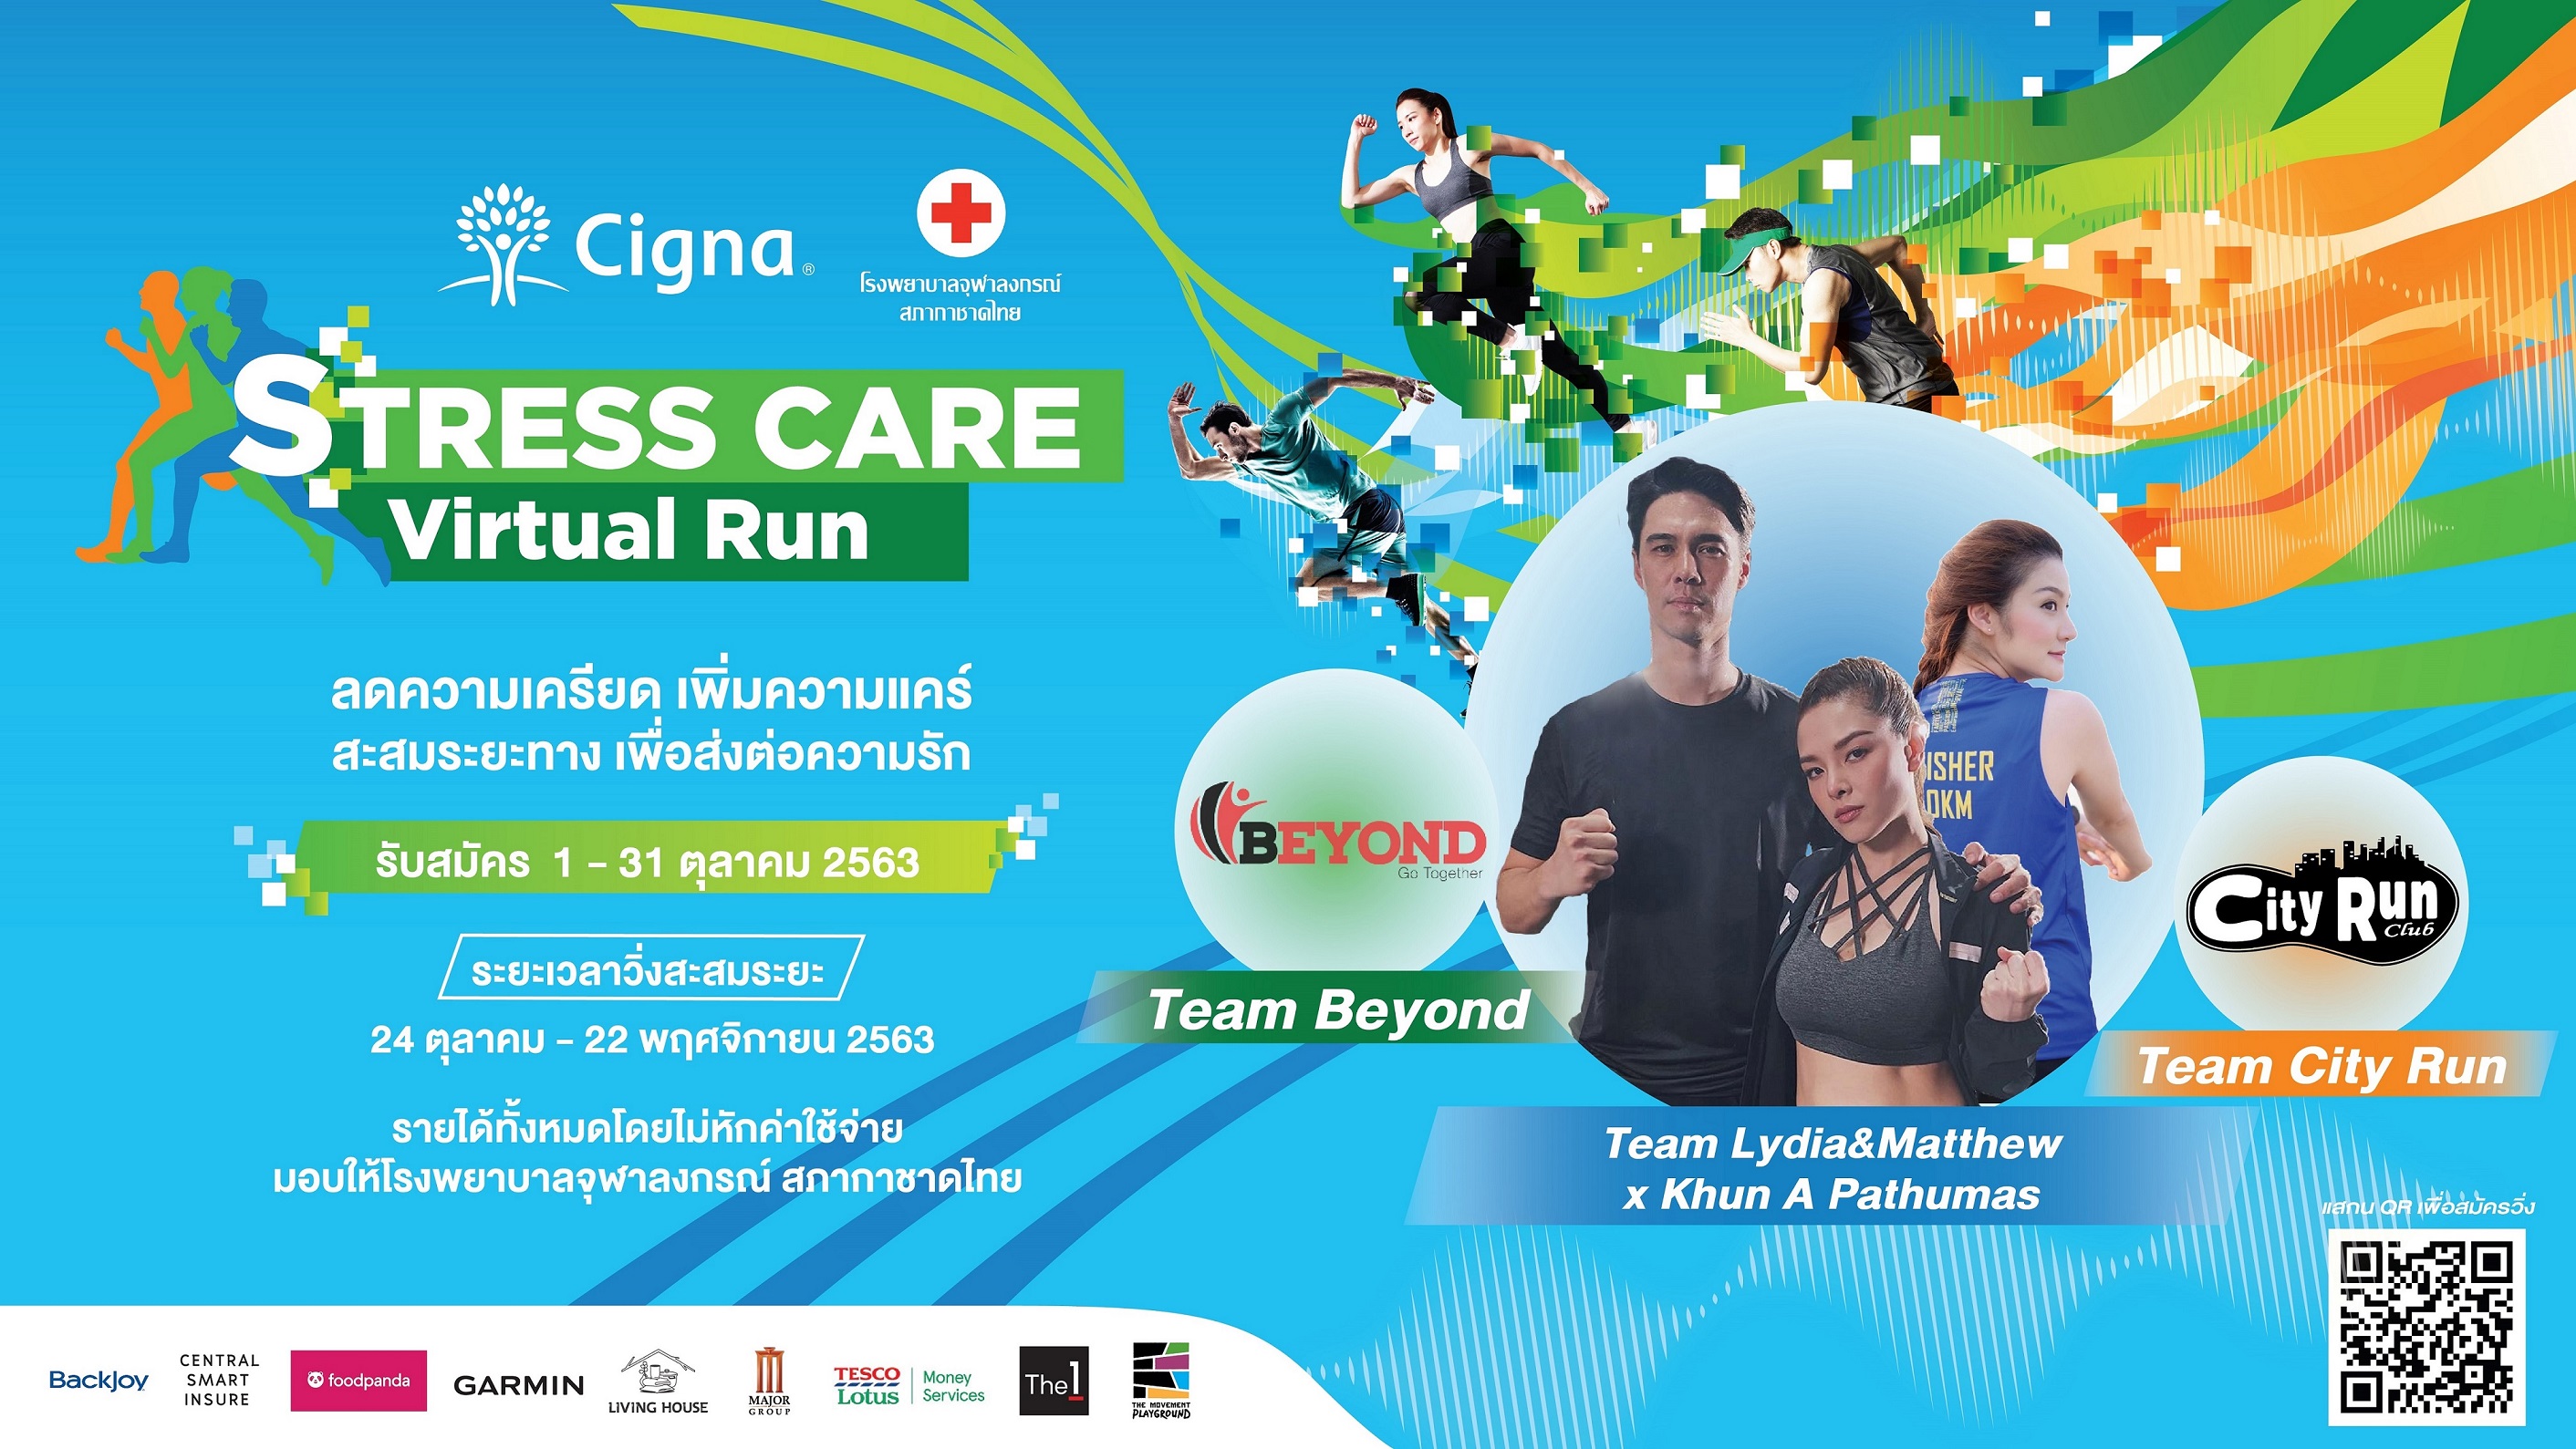 ซิกน่า ประกันภัย ชวนคนไทยวิ่งสลายเครียด ปีที่ 2 ในรูปแบบ Virtual Run รายได้ทั้งหมด ไม่หักค่าใช้จ่าย มอบให้แก่โรงพยาบาลจุฬาลงกรณ์ สภากาชาดไทย